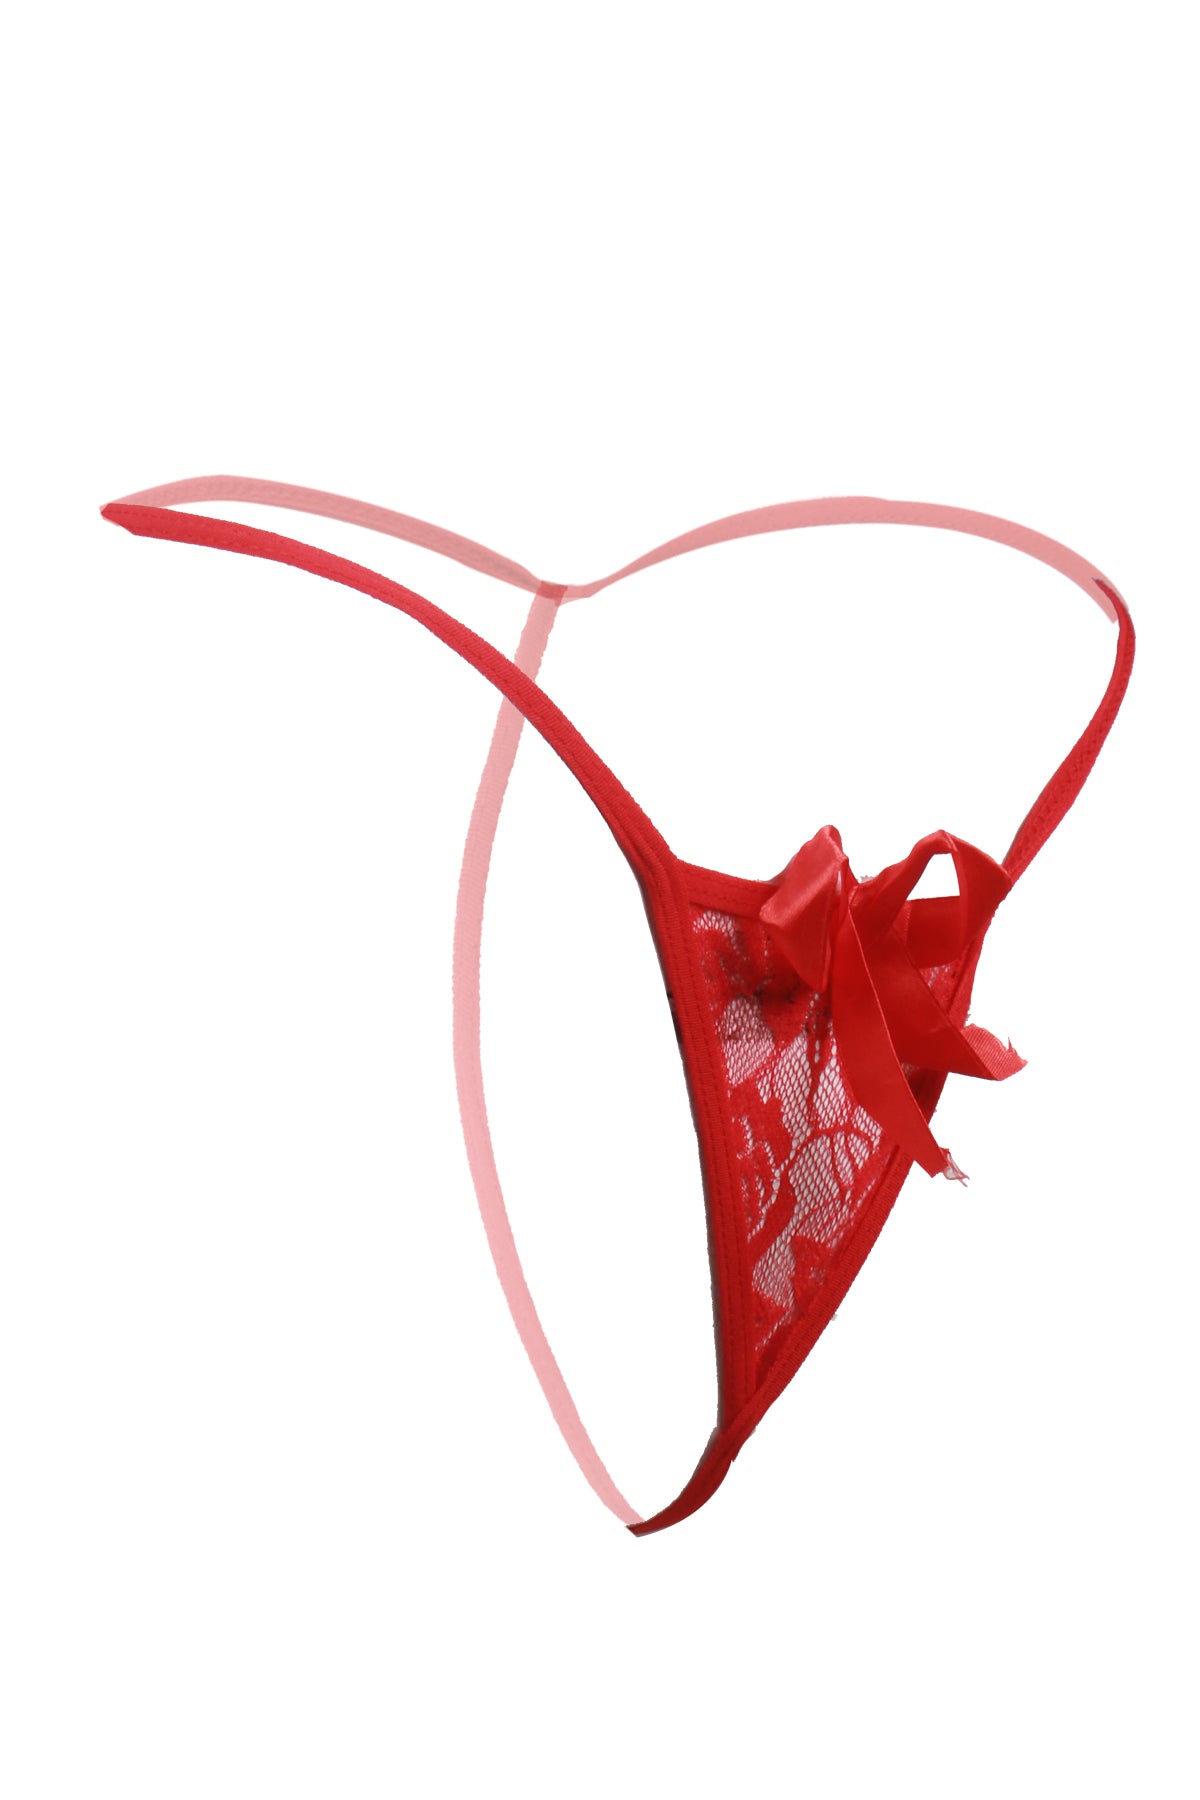 Itspleazure Ribbon Thong for Women - Red